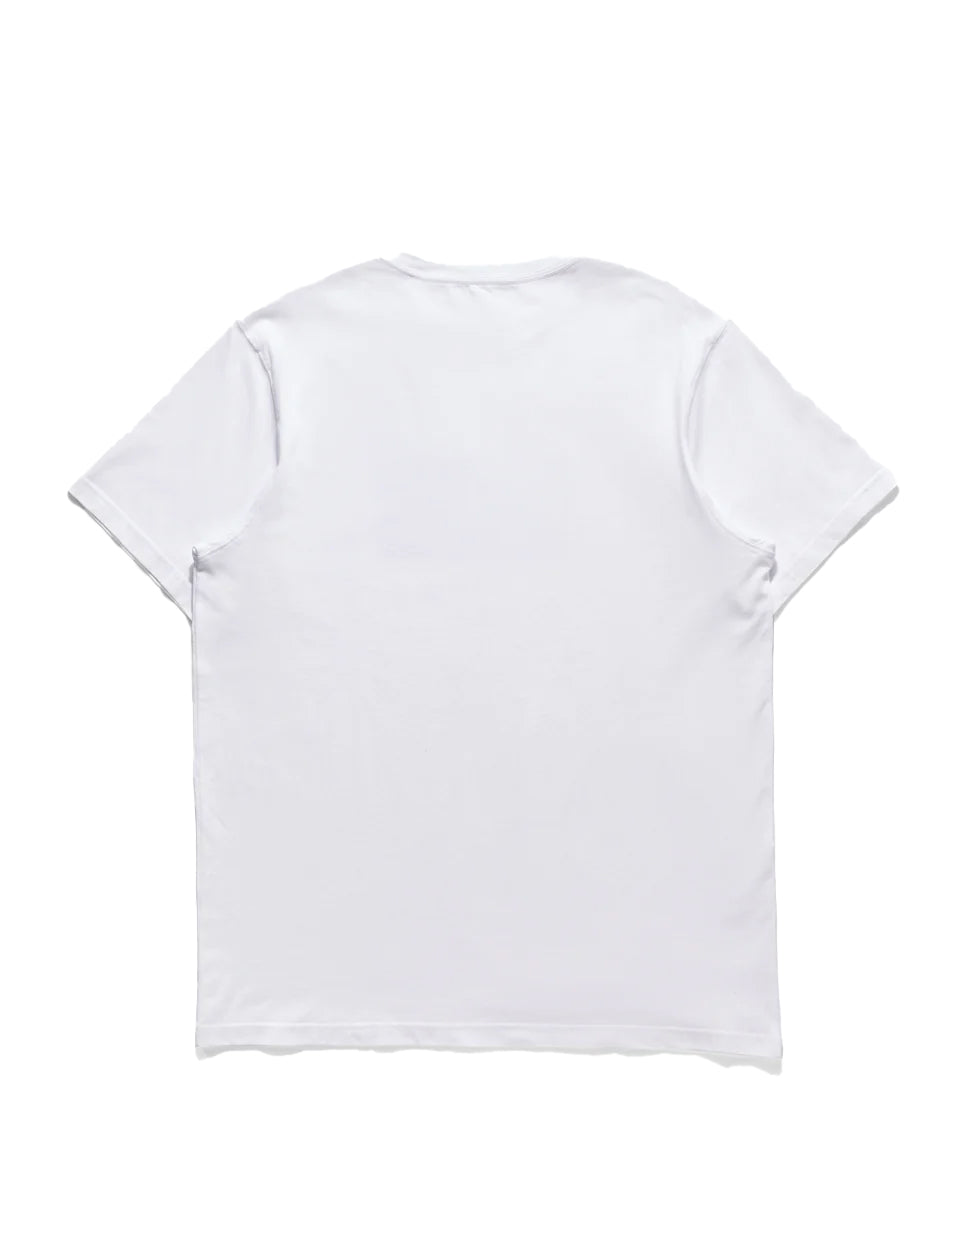 Maharishi Triptych Water Dragon T-Shirt White